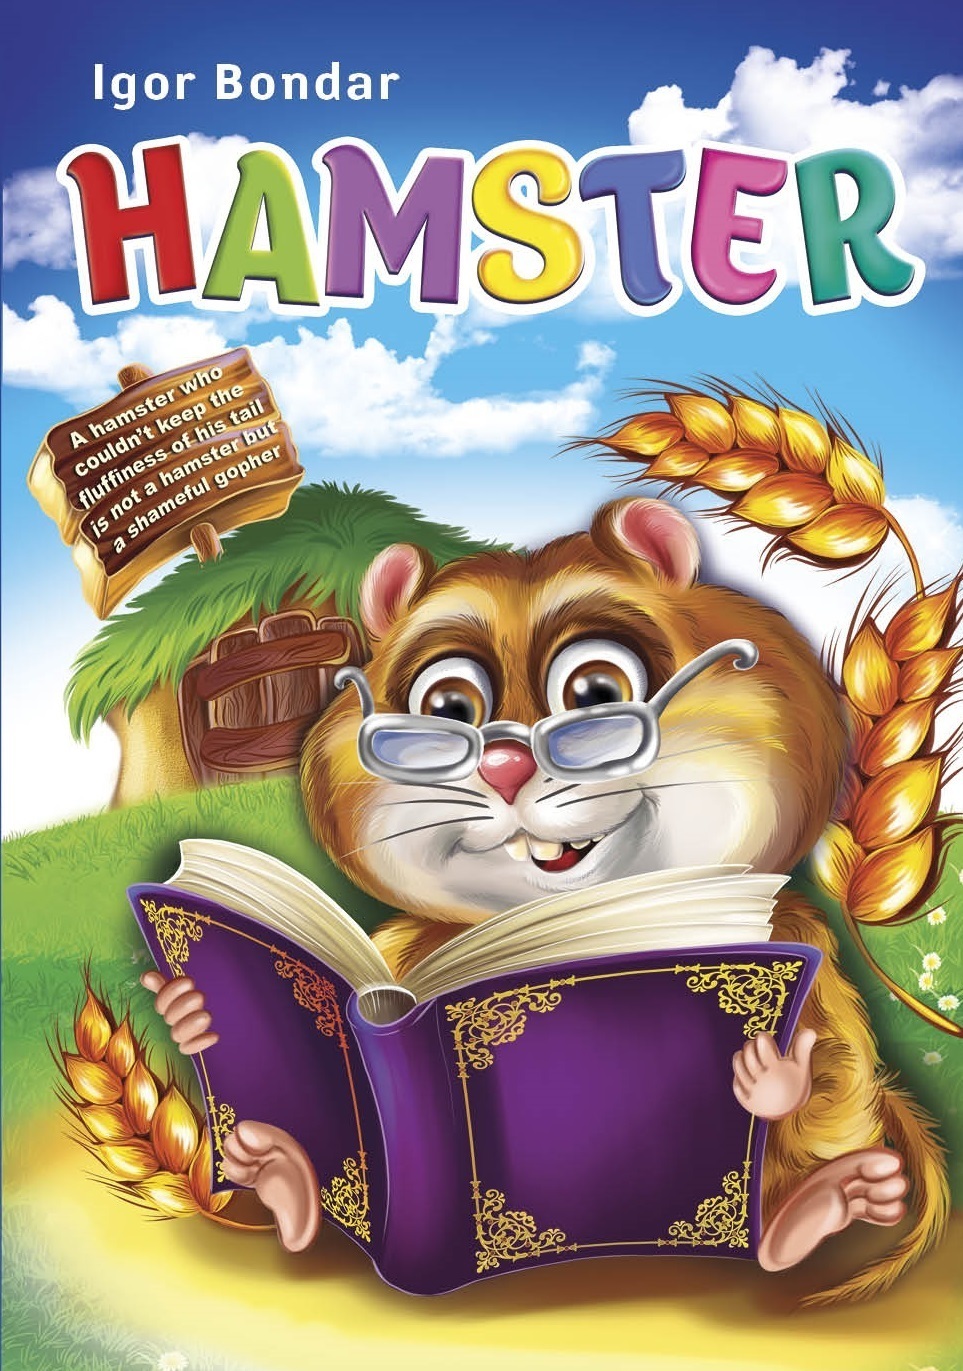 Book Hamster. Writer Igor Bondar